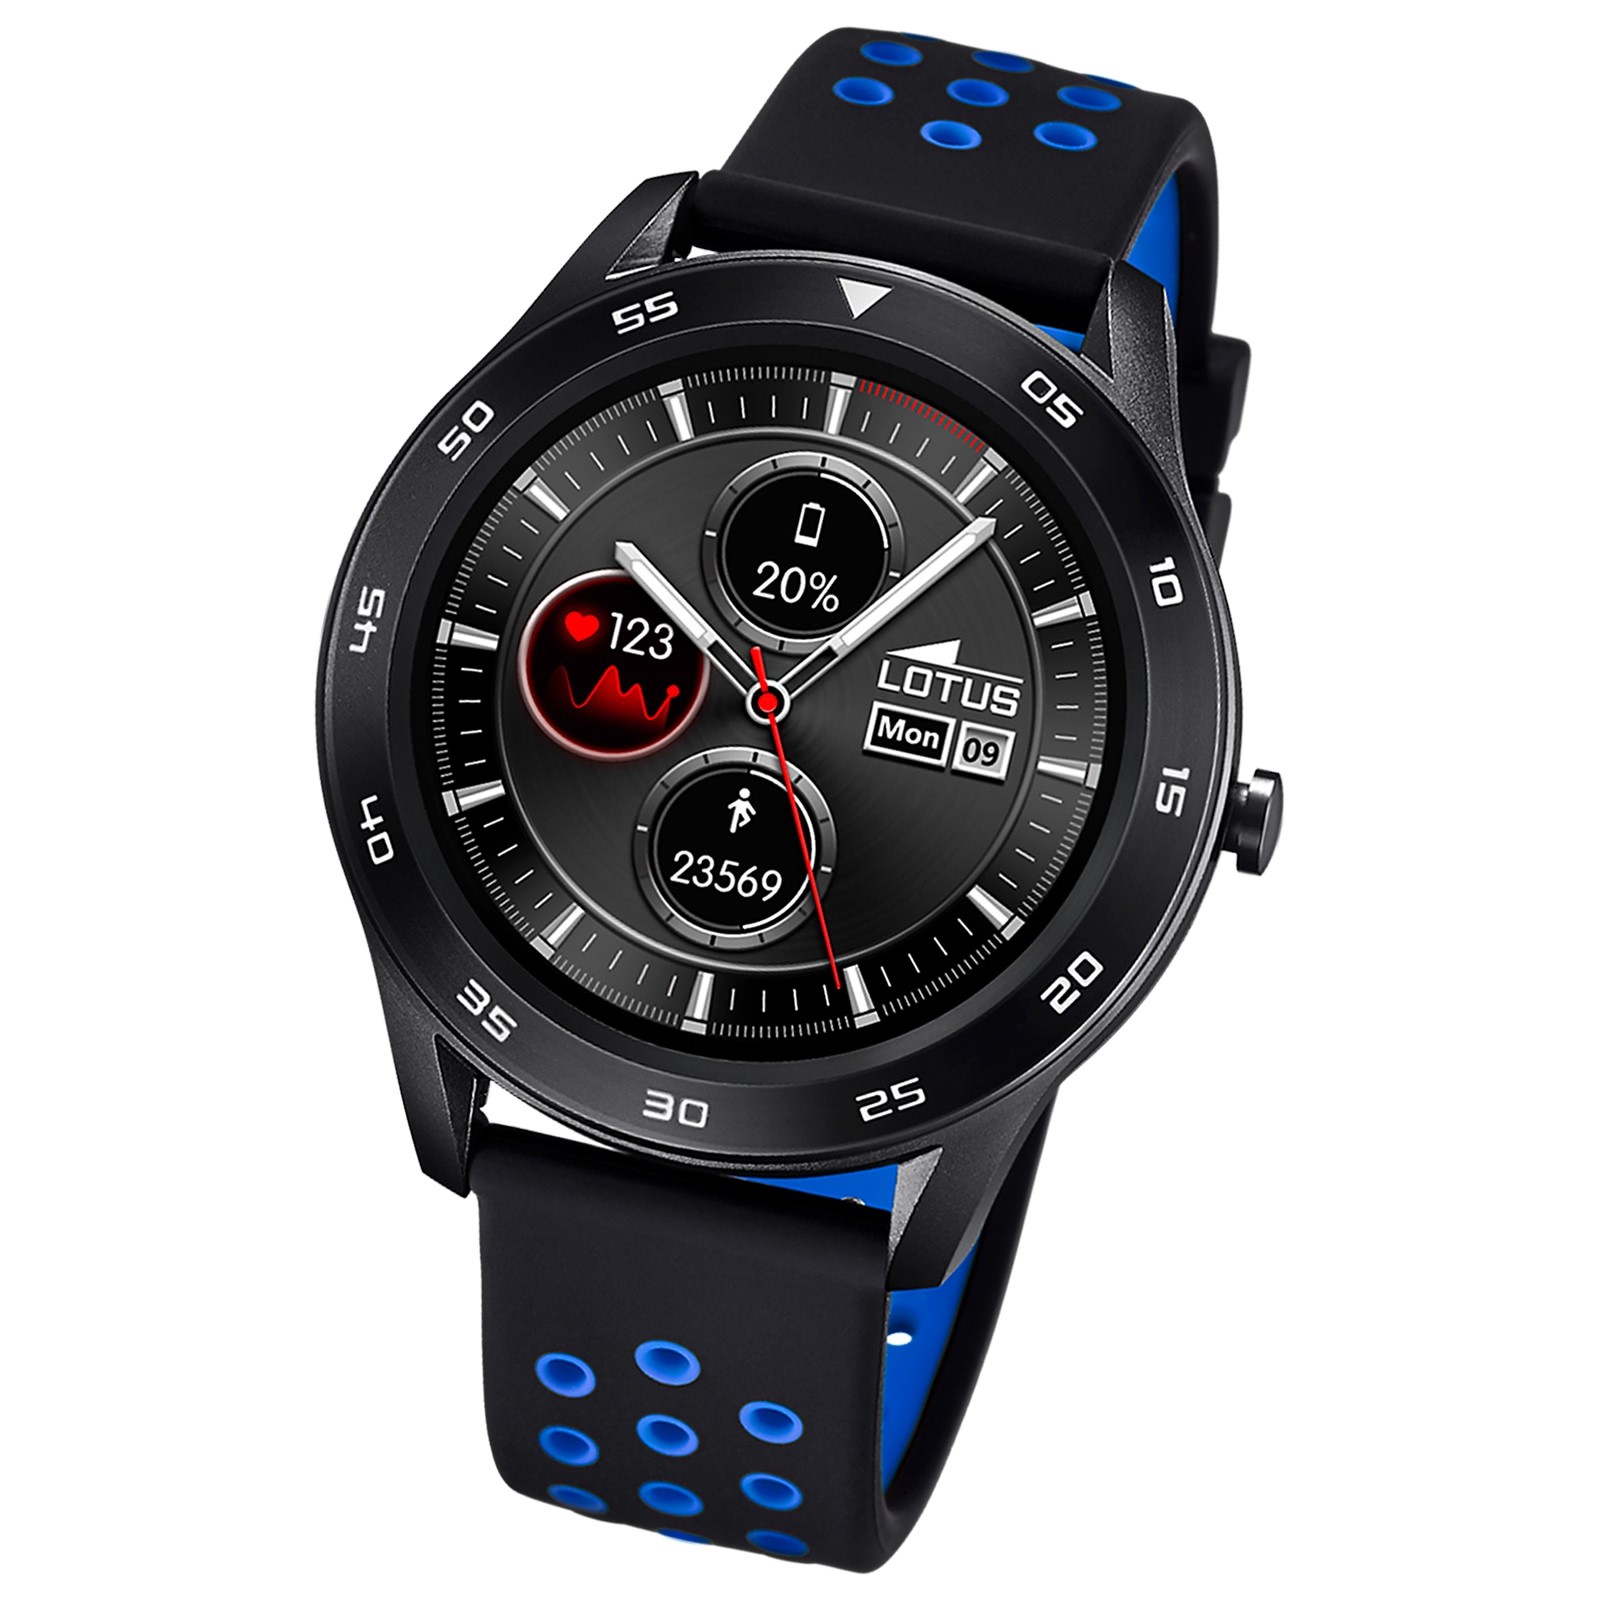 Lotus Herrenuhr Silikon schwarz blau hellgrün Multifunktion Armbanduhr UL50013/3